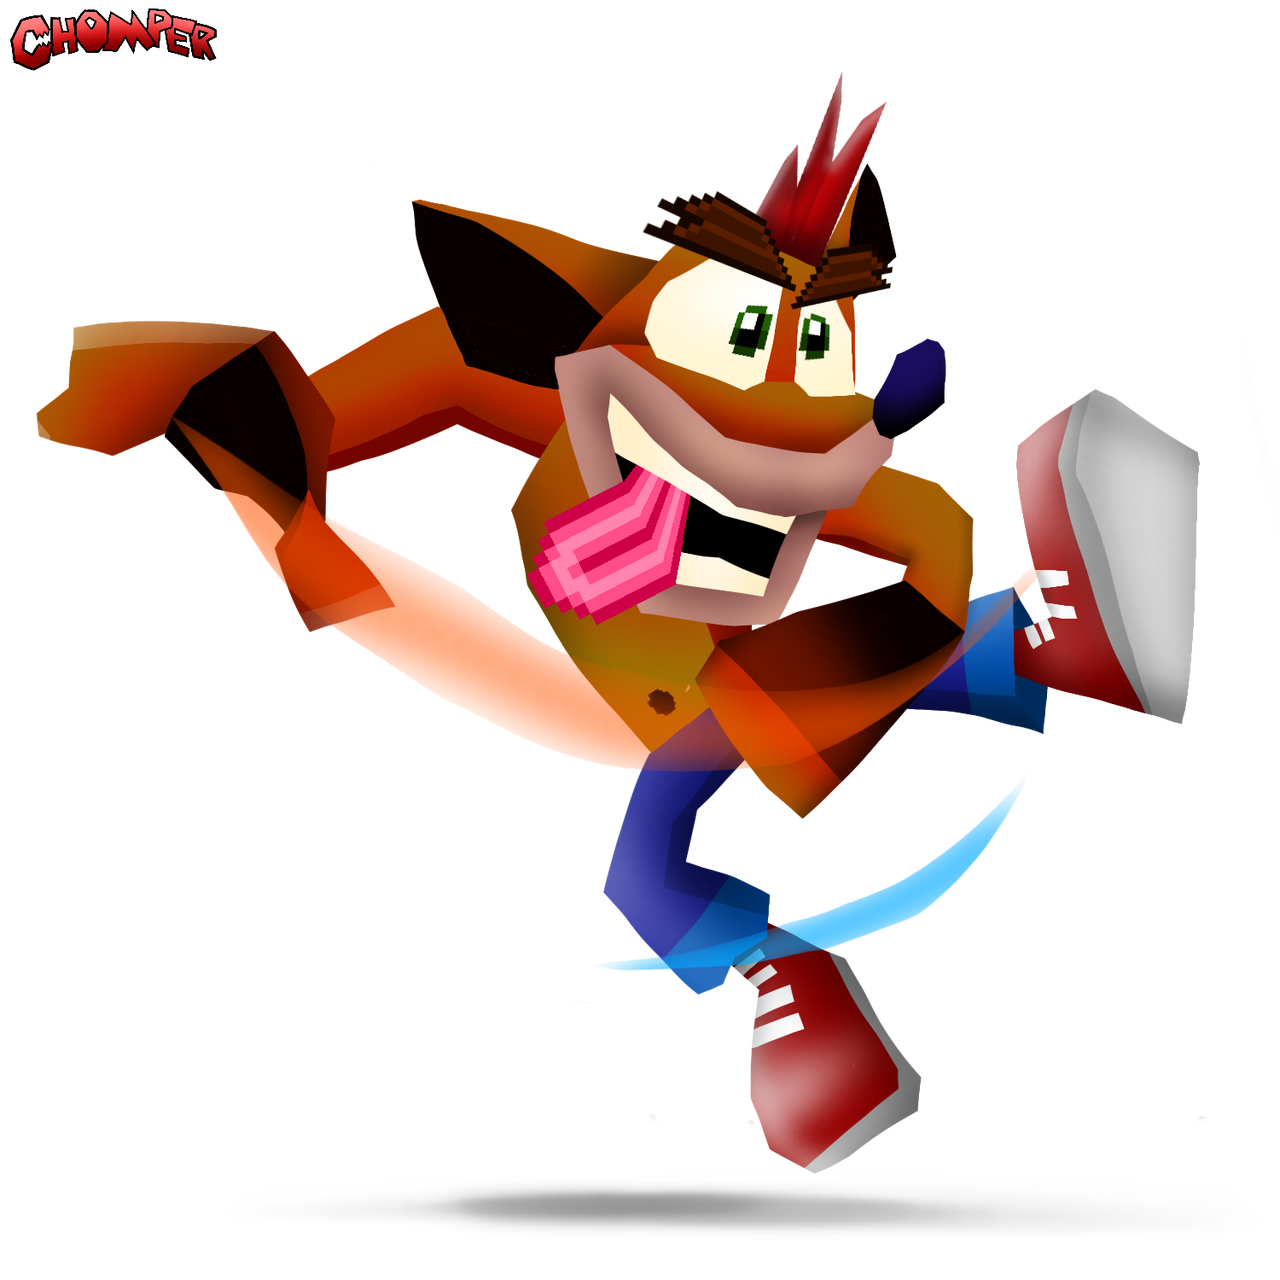 Crash Bandicoot Smash Bros. Style Render V4 by ChomperDev1antart